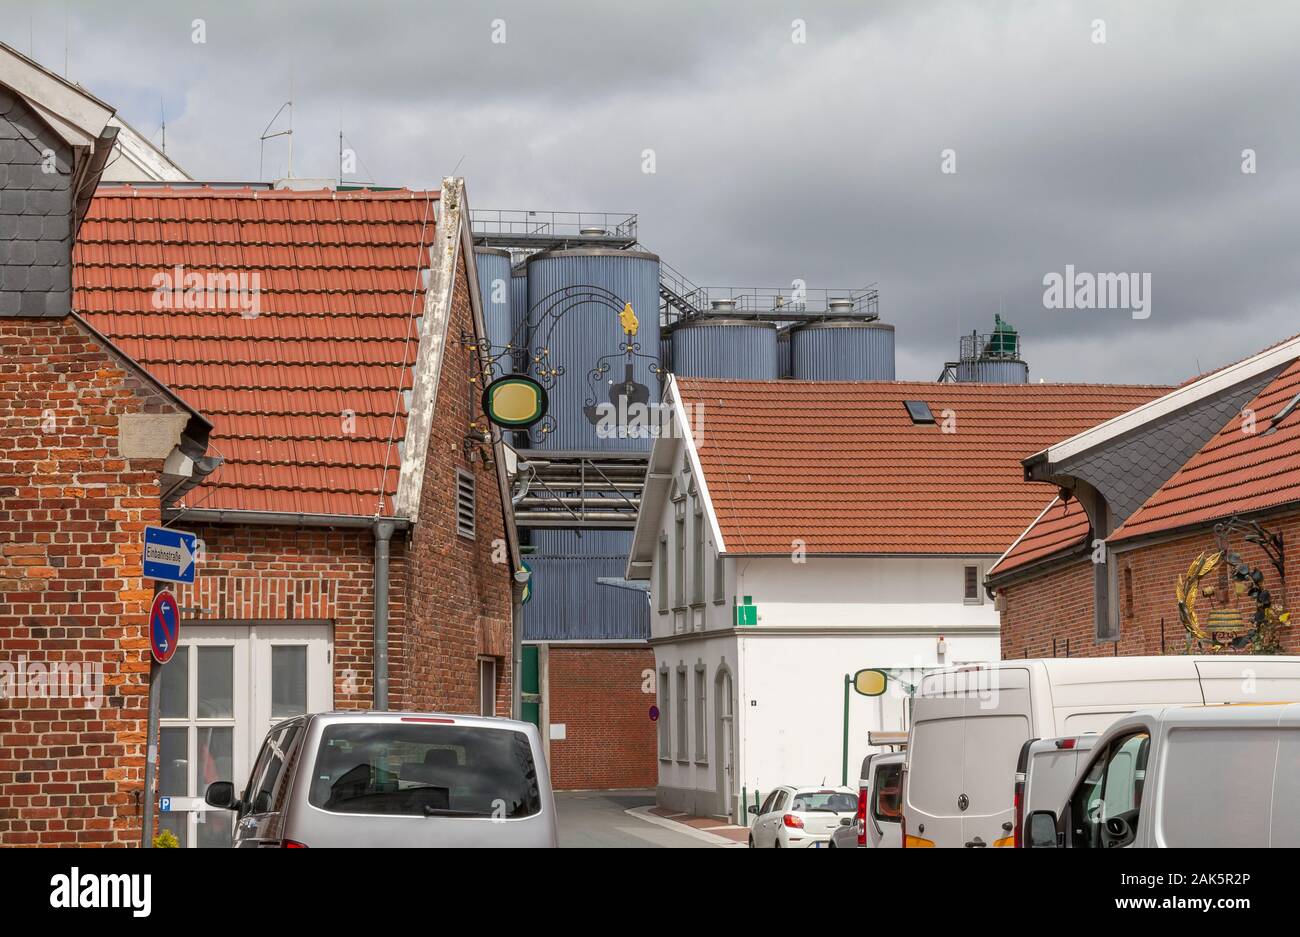 Impression d'architecture vu à une ville nommée Jever qui est situé dans la région de Frise orientale, dans le Nord de l'Allemagne Banque D'Images